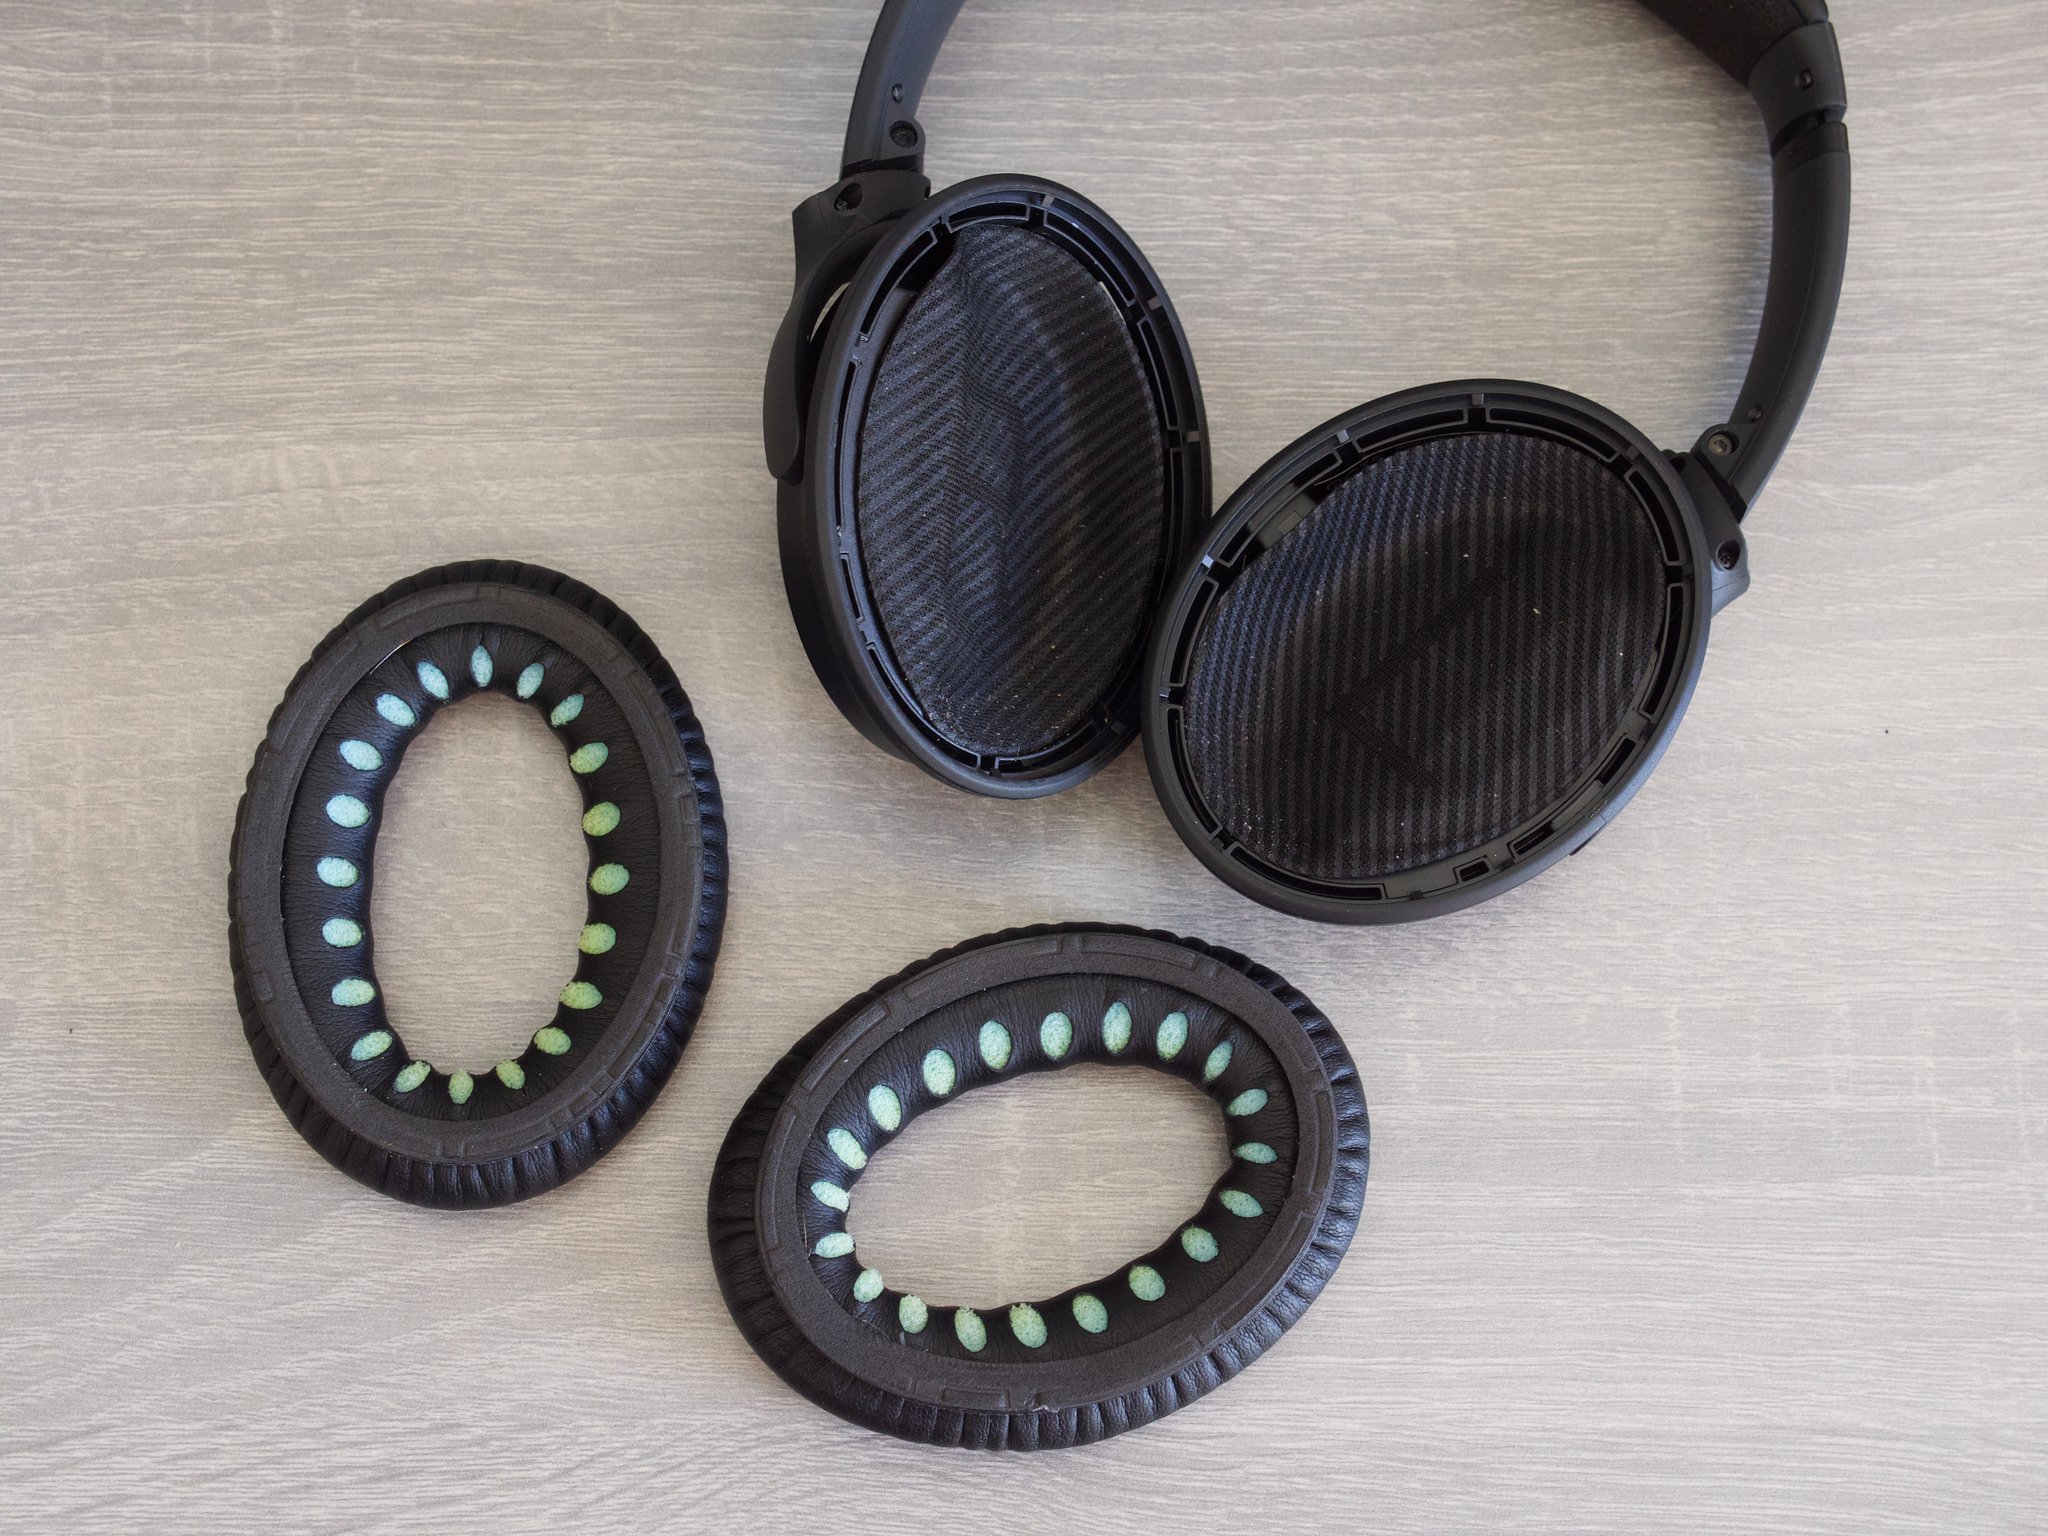  Sådan rengøres hovedtelefoner